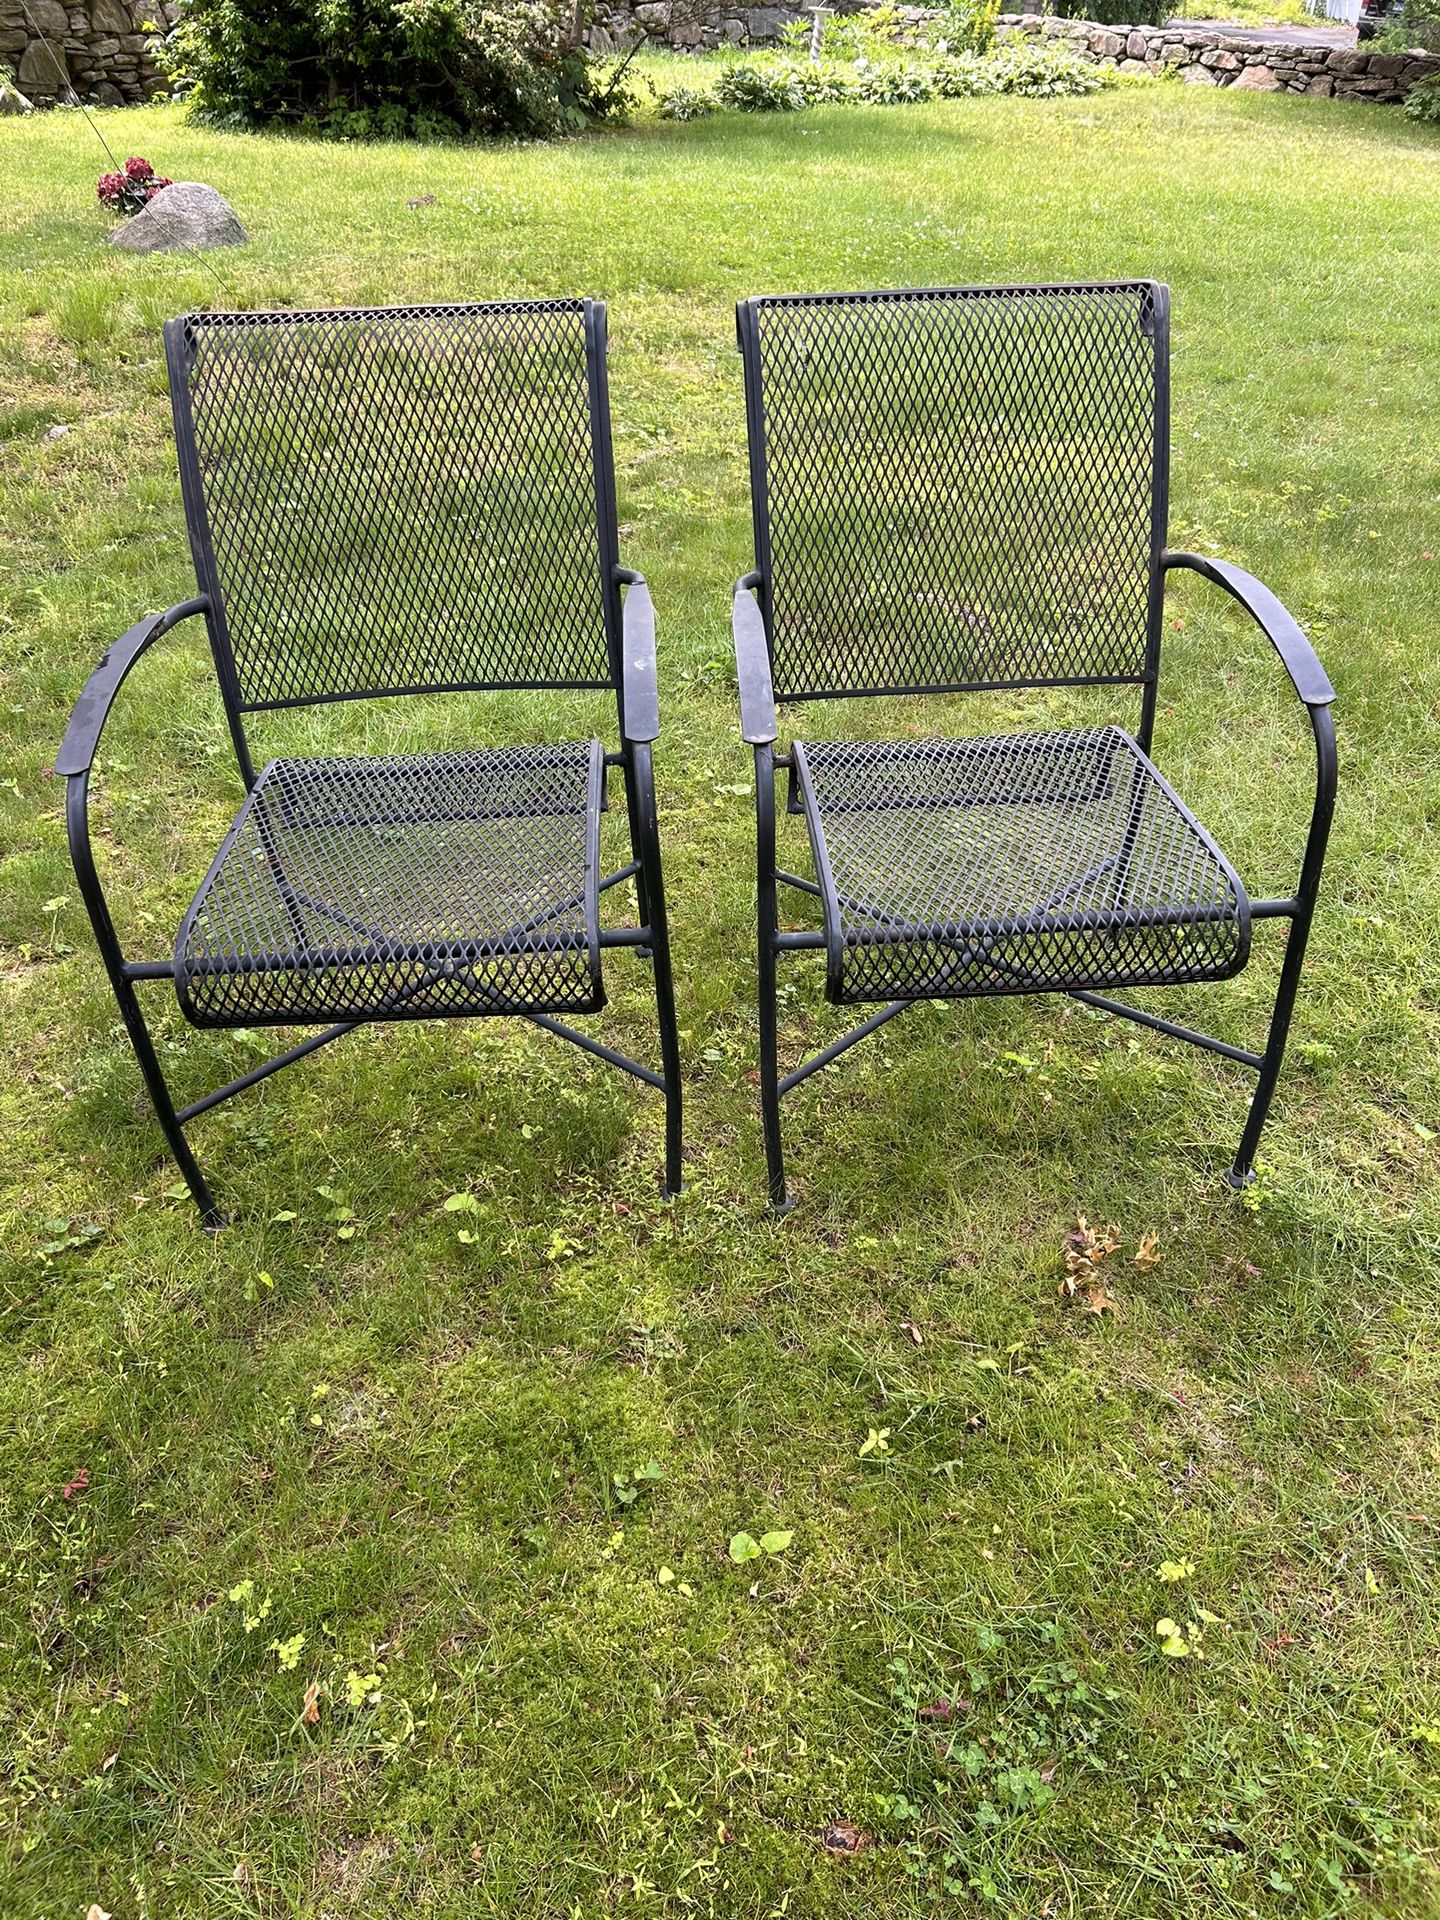 Pair Of Iron Mesh Chairs, Black